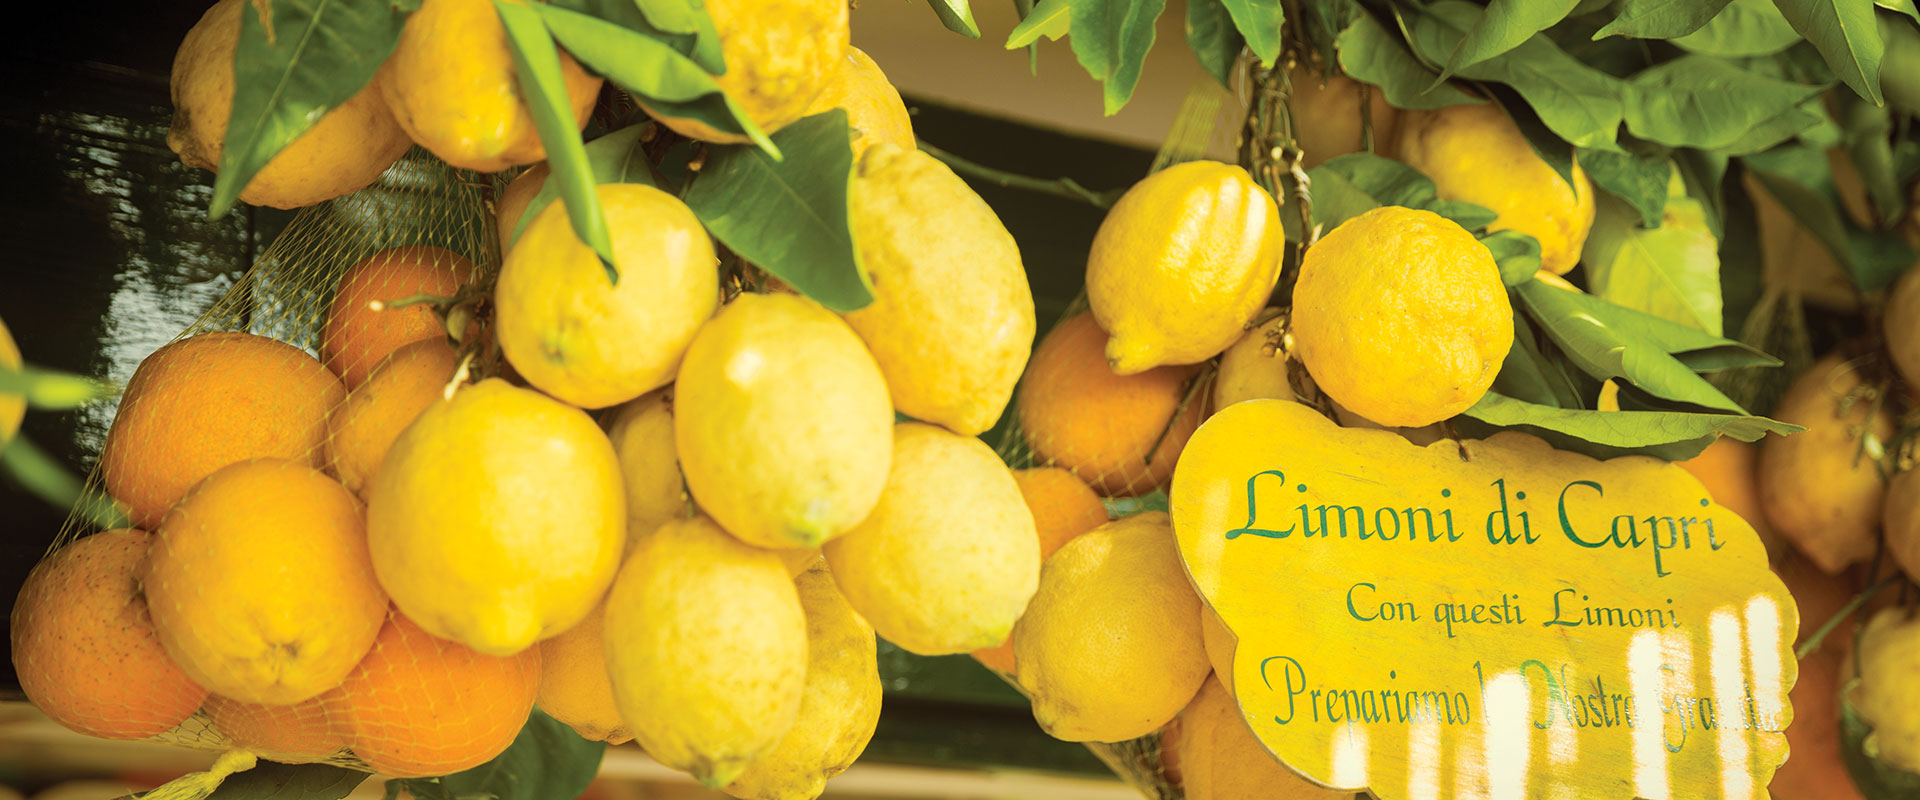 Lemons, Italy